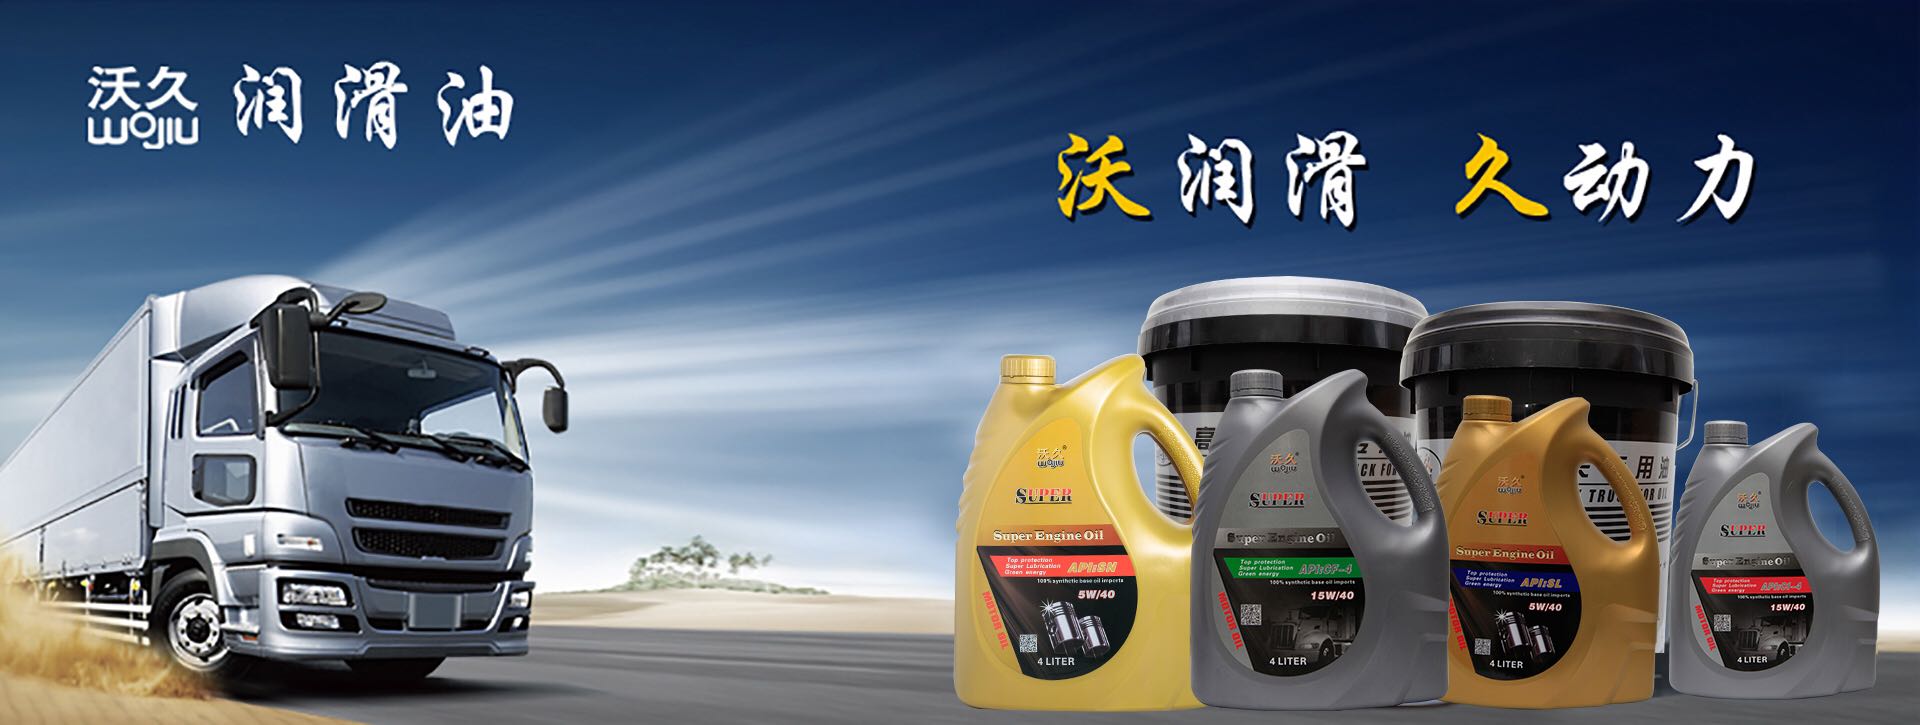 第十九届中国国际润滑油品及应用技术展览会将